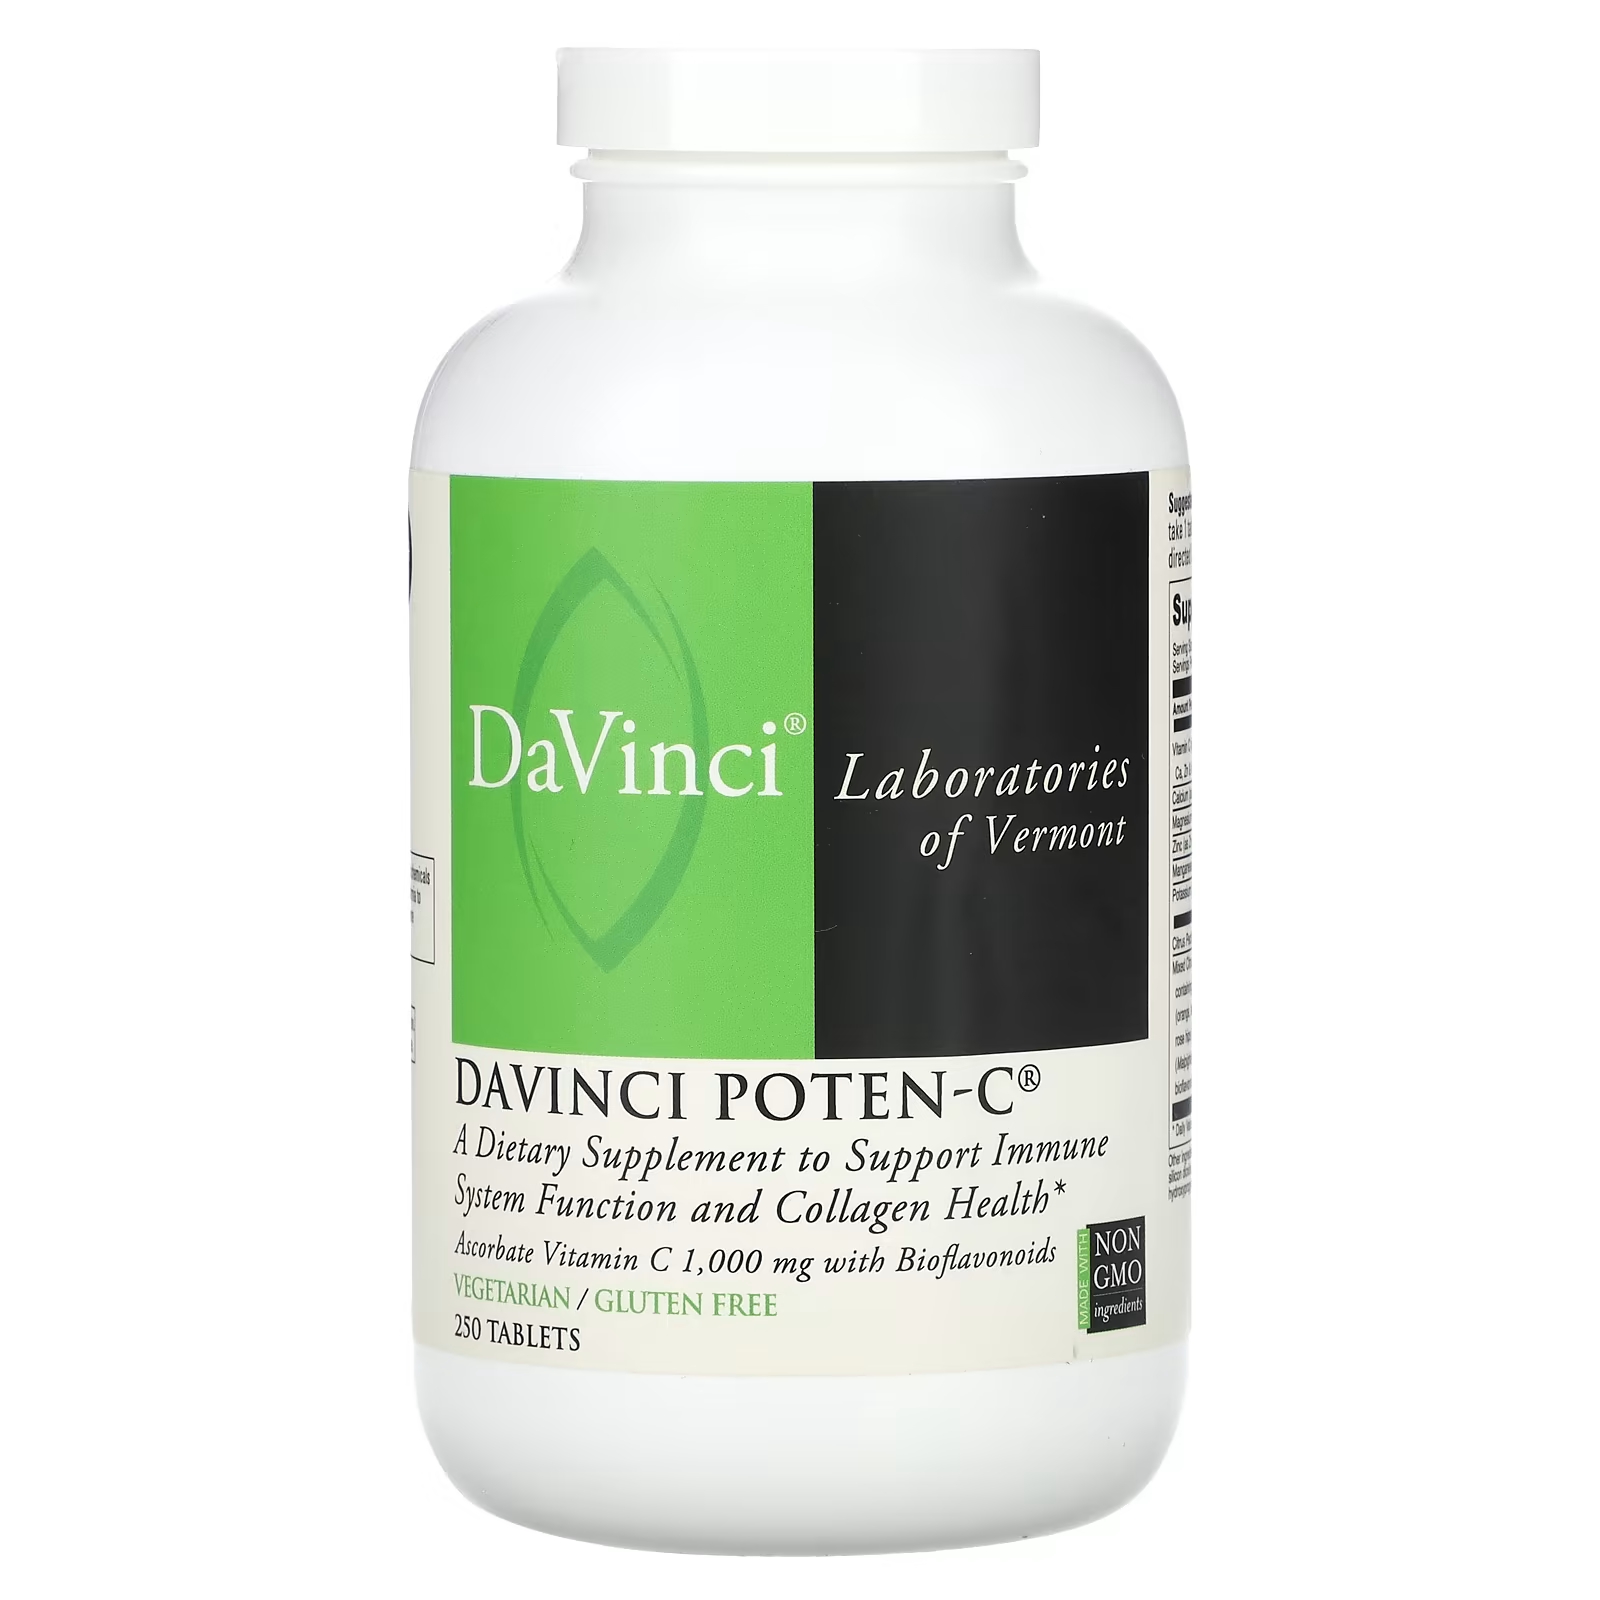 Пищевая добавка DaVinci Laboratories of Vermont Davinci Poten-C, 250 таблеток davinci laboratories of vermont davinci poten c 500 90 капсул